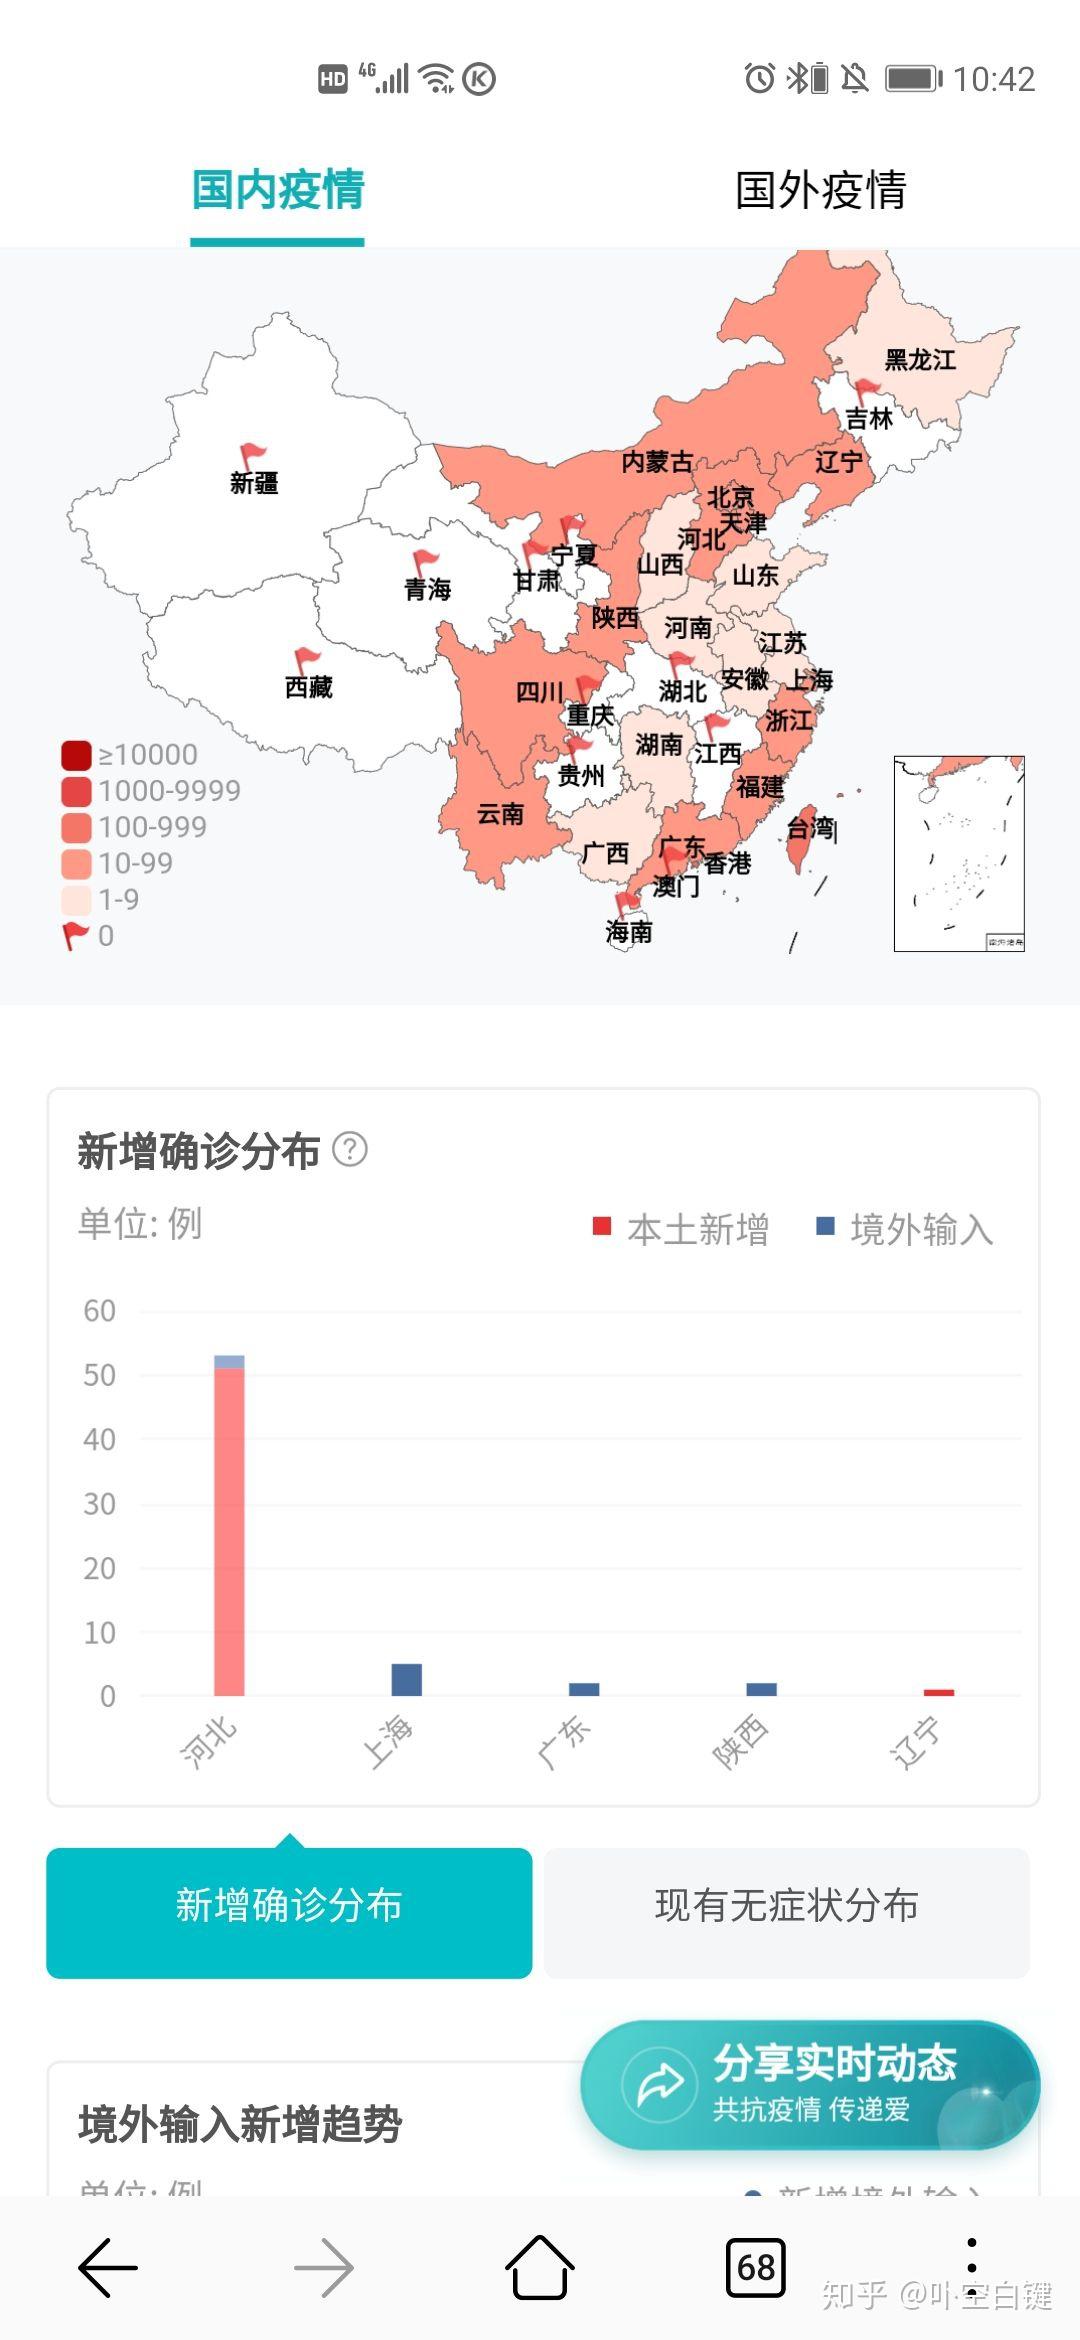 中国疫情最新情况清单图片